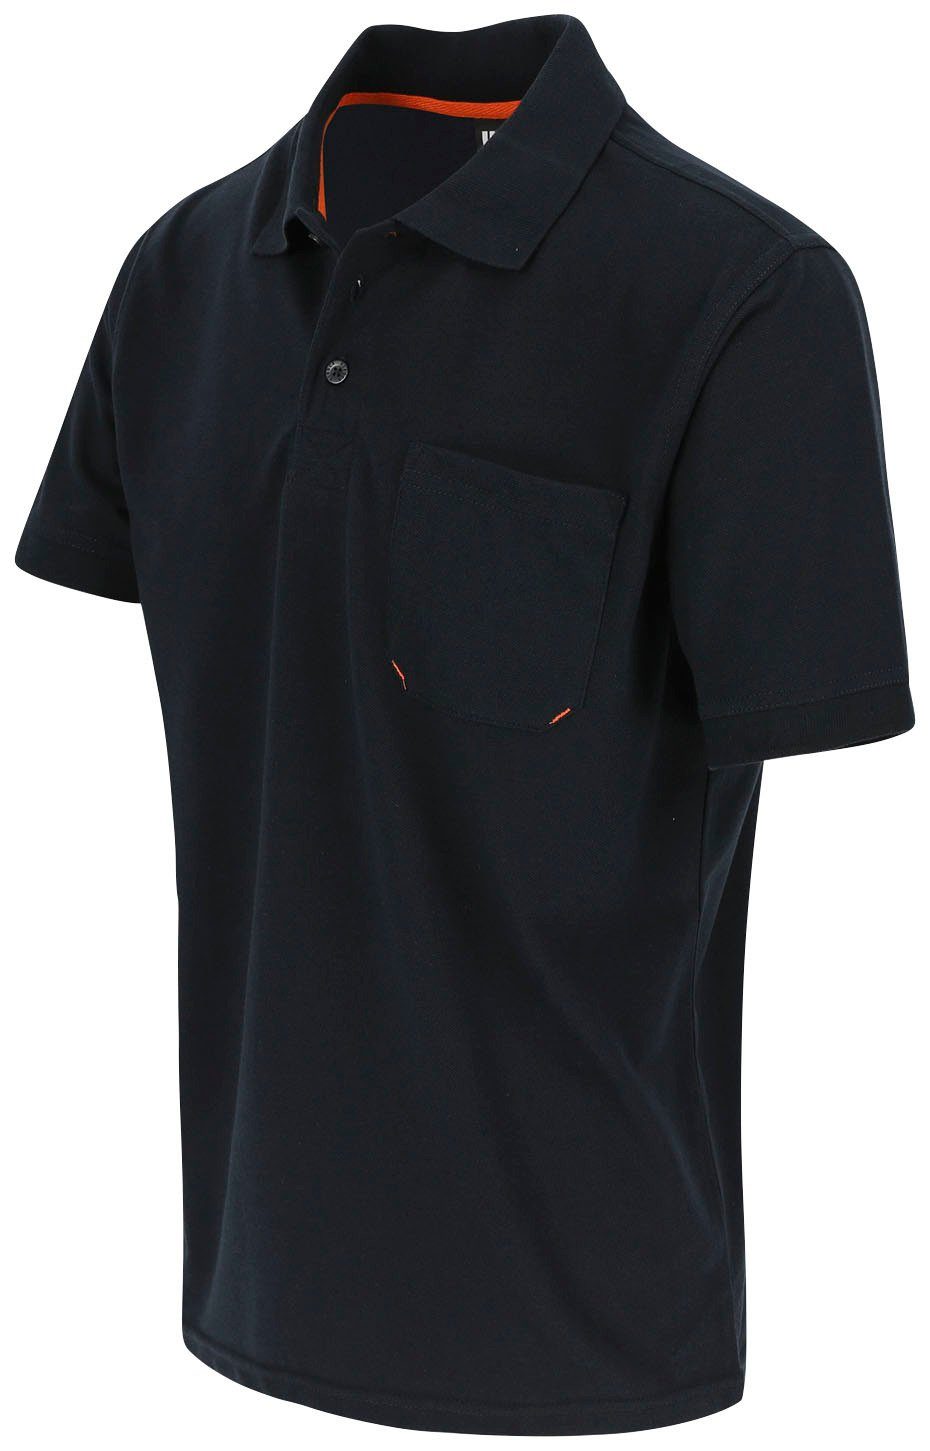 Brusttasche, und Farben verschiedene Leo Bündchen, 1 Rippstrick-Kragen Poloshirt Polohemd Kurzärmlig marine Herock